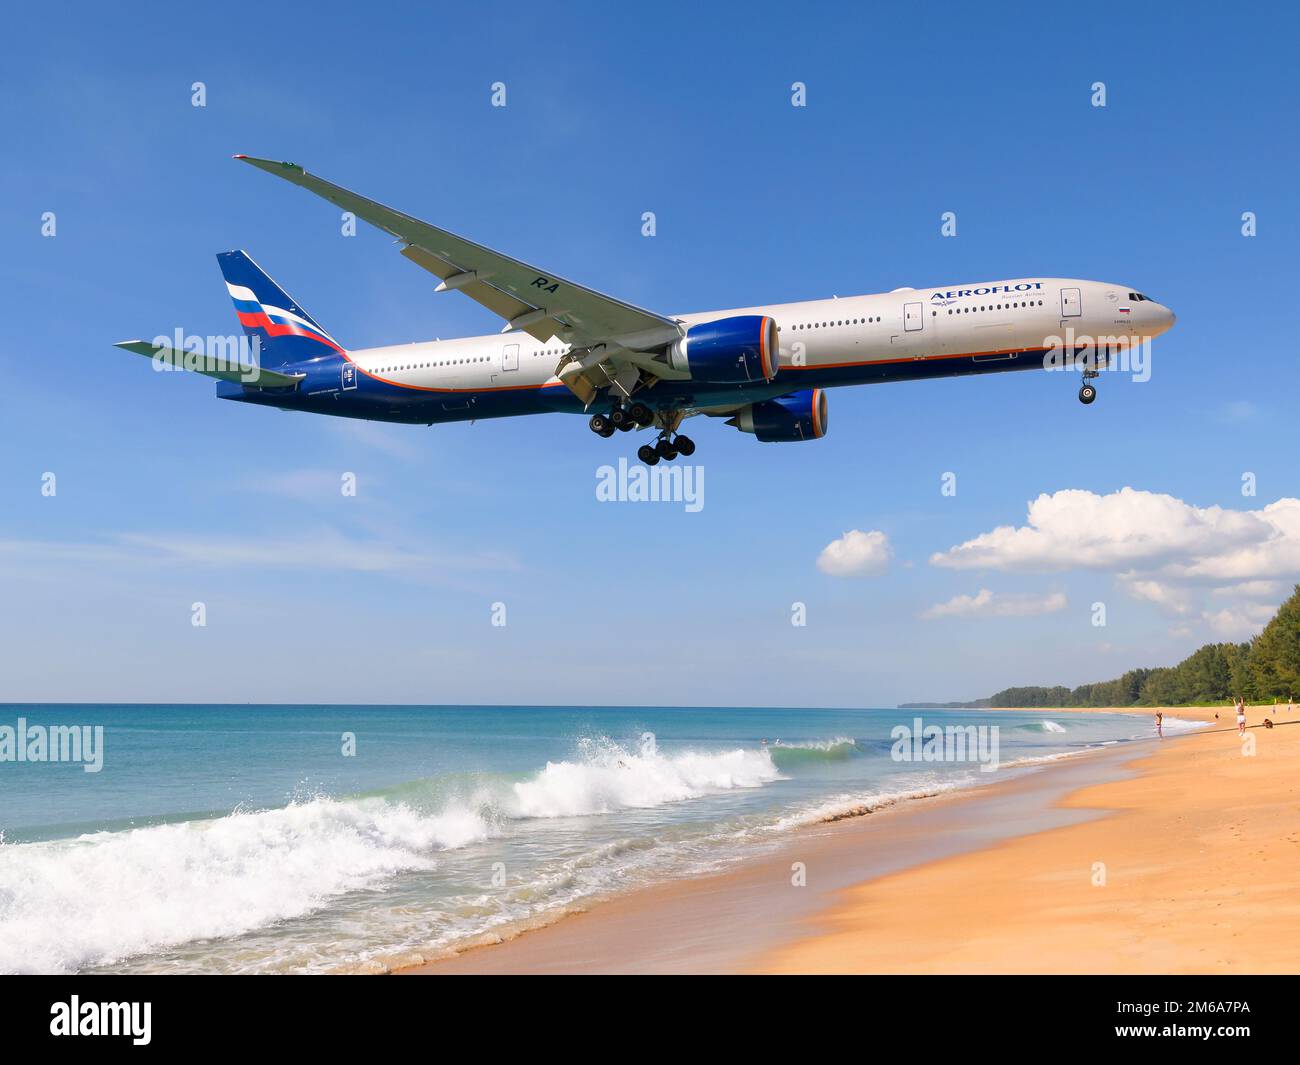 Aeroflot Boeing 777 über Mai Khao Beach in der Nähe des Flughafens Phuket, Thailand. Aeroflot Russian Airlines Boeing 777-300ER Flugzeug. Stockfoto